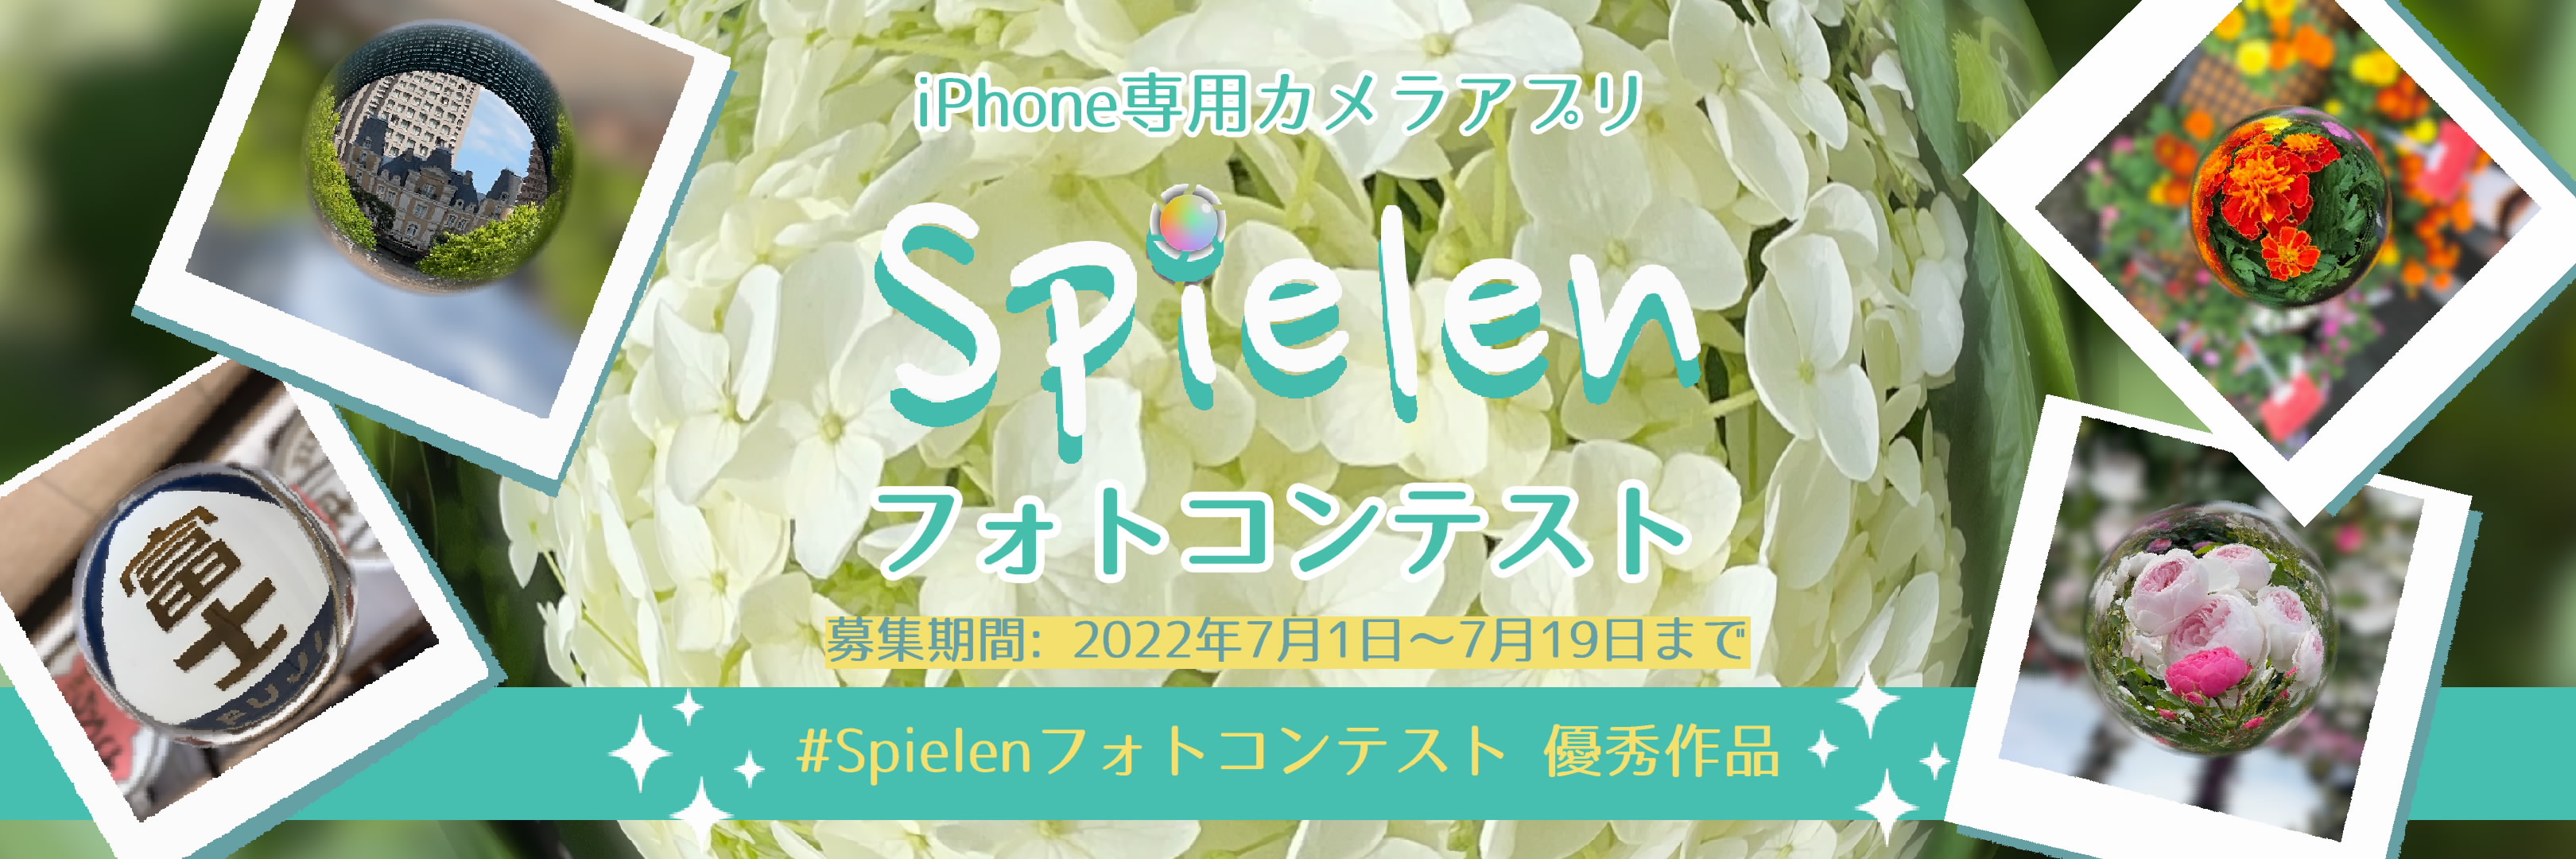 iPhone専用カメラアプリ Spielen フォトコンテスト 入選作品発表